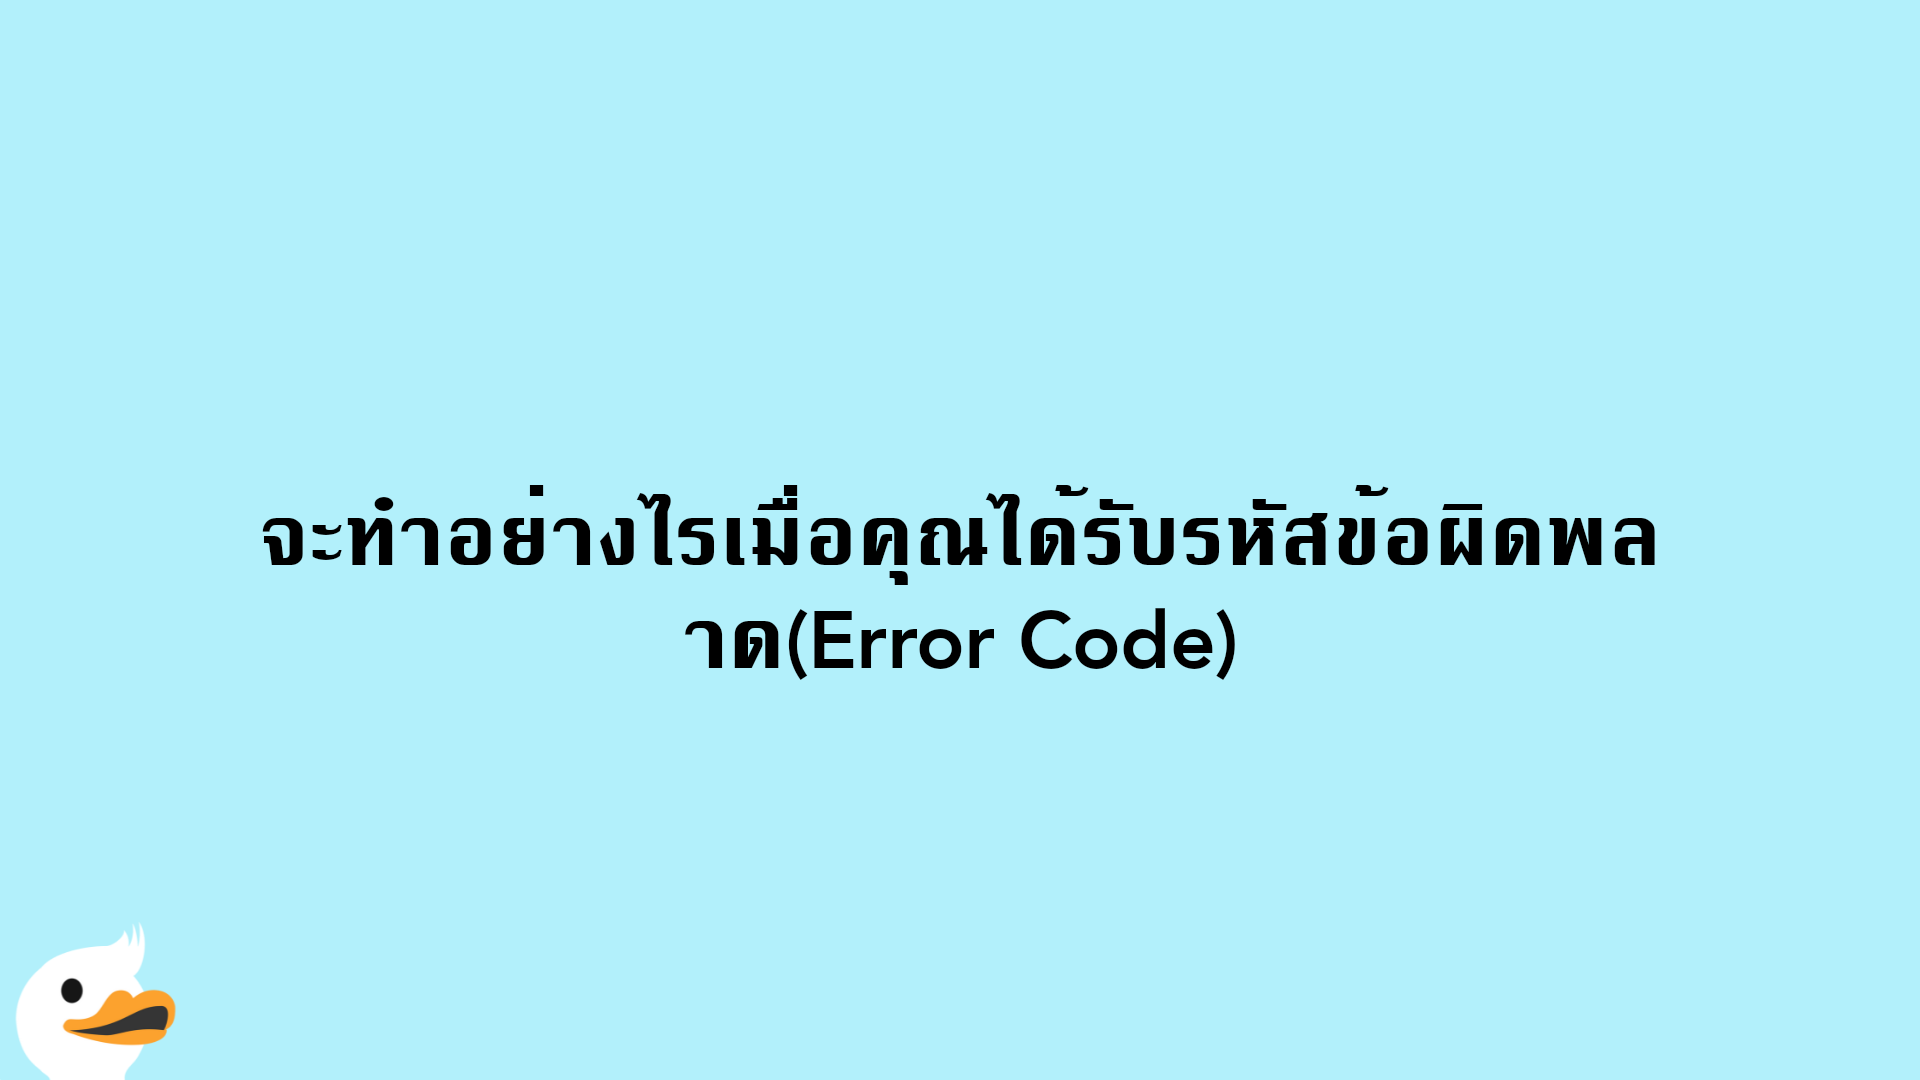 จะทำอย่างไรเมื่อคุณได้รับรหัสข้อผิดพลาด(Error Code)